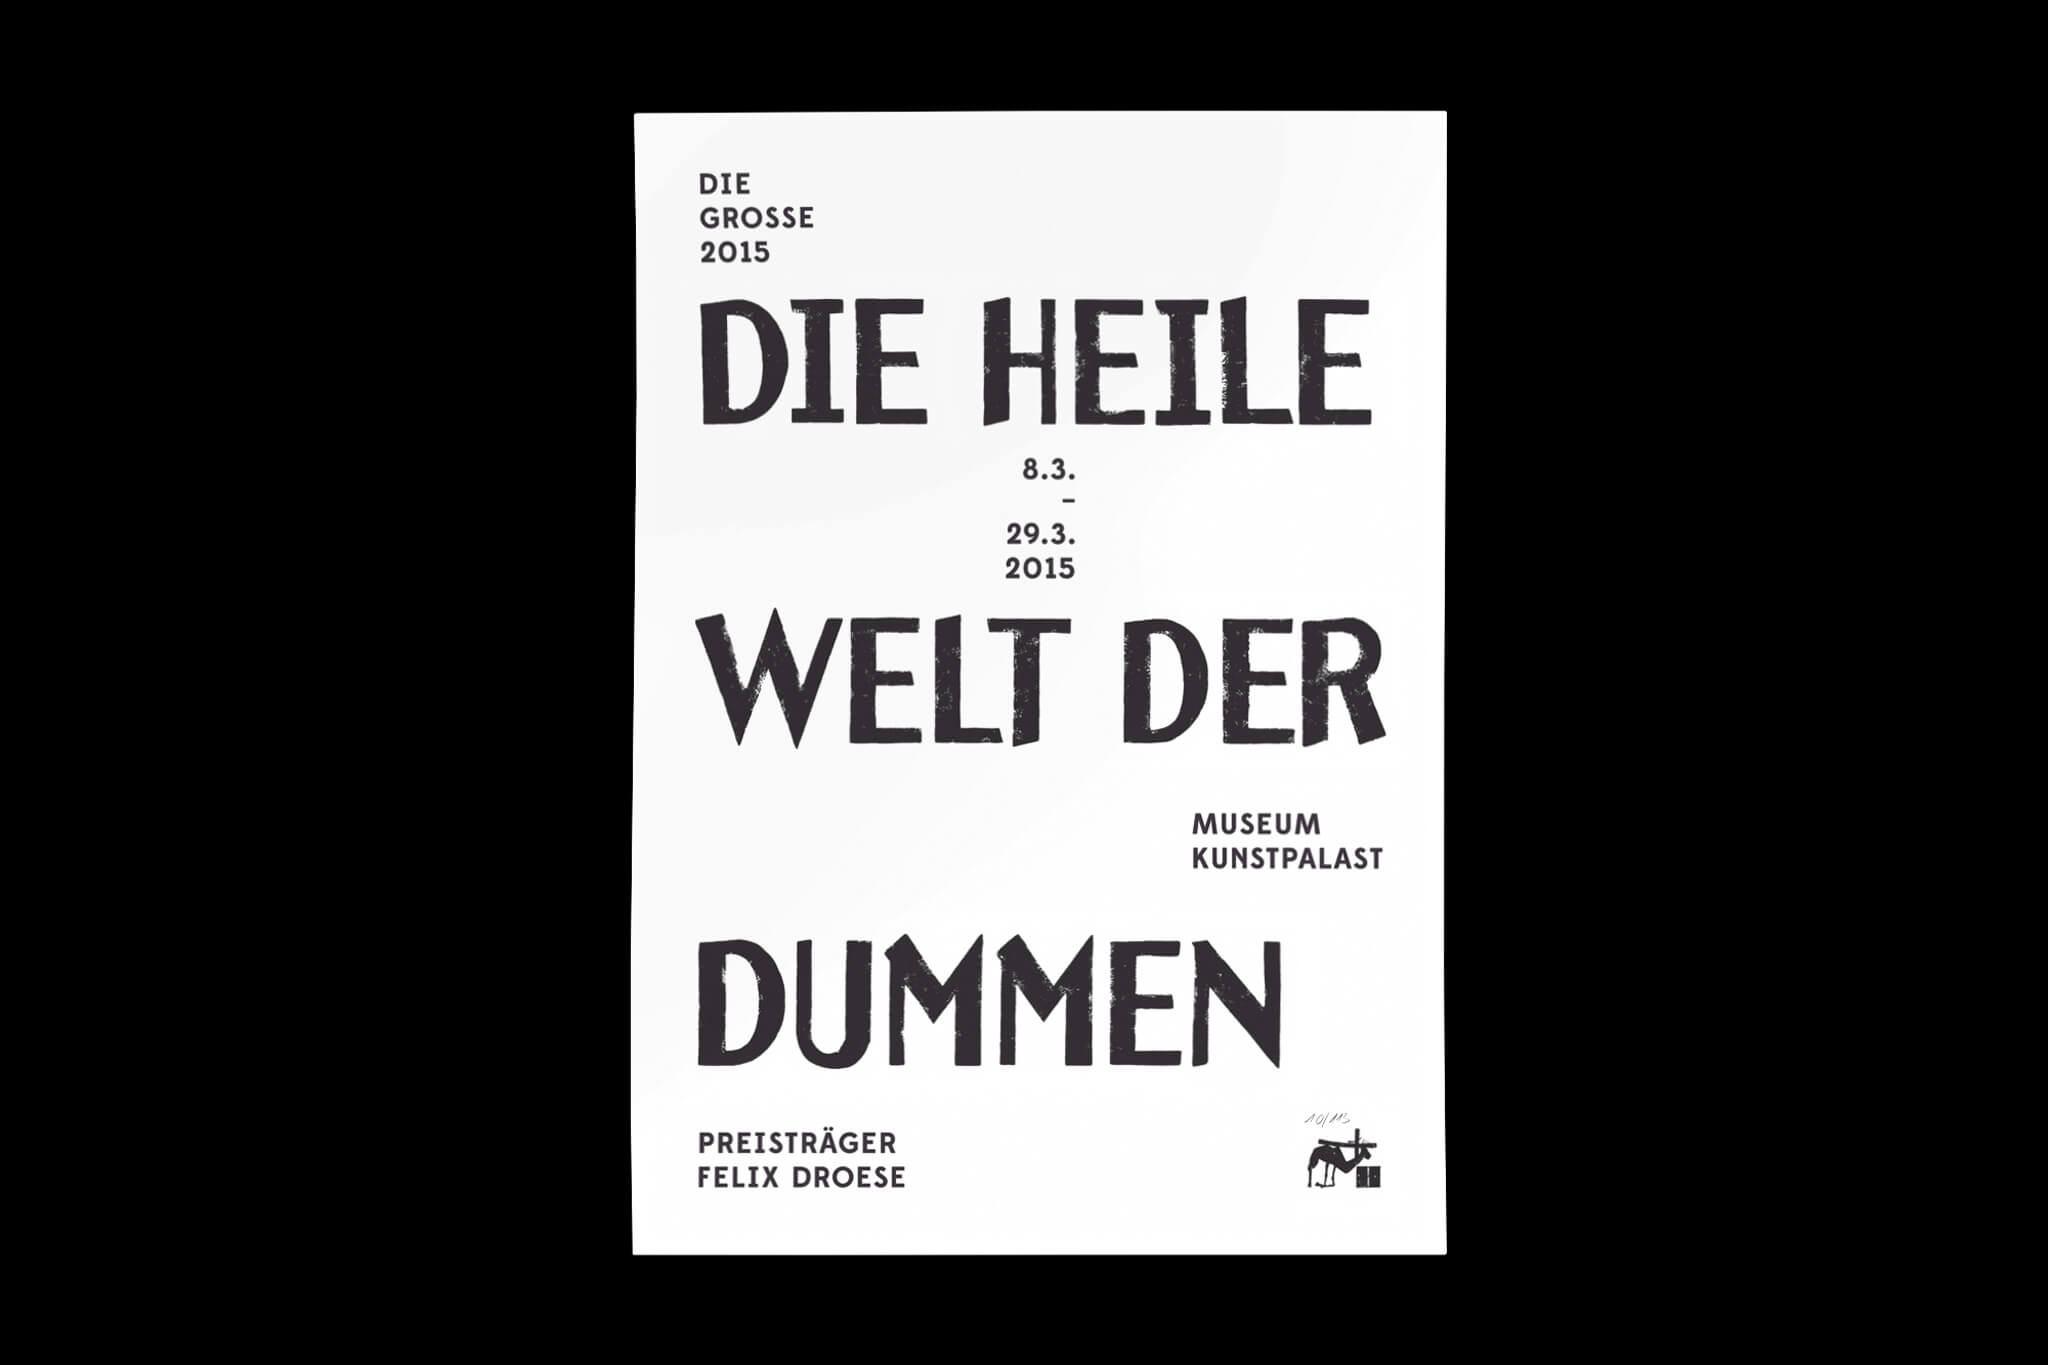 Sonderposter Edition Die Heile Welt der Dummen / Special poster edition Edition Die Heile Welt der Dummen